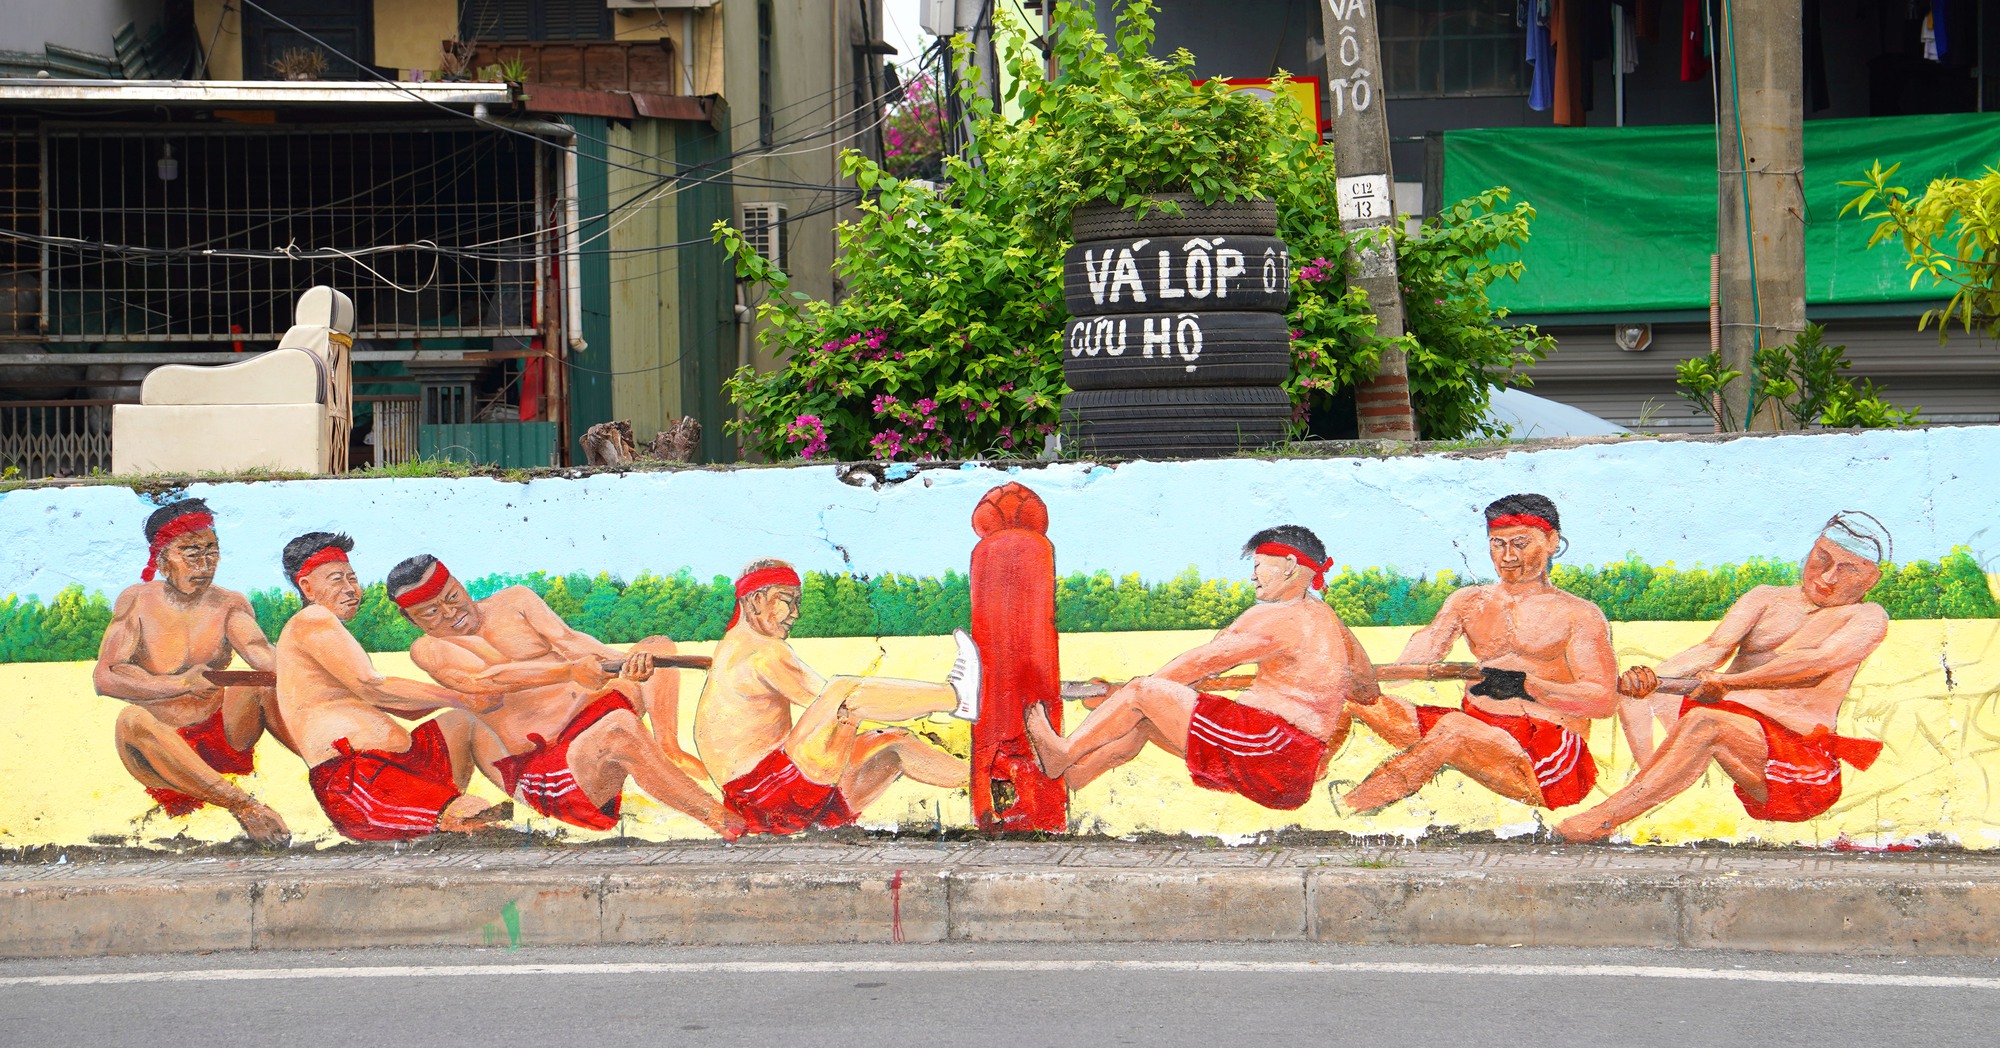 Ngắm nhìn con đường bích hoạ tại Long Biên - Ảnh 2.